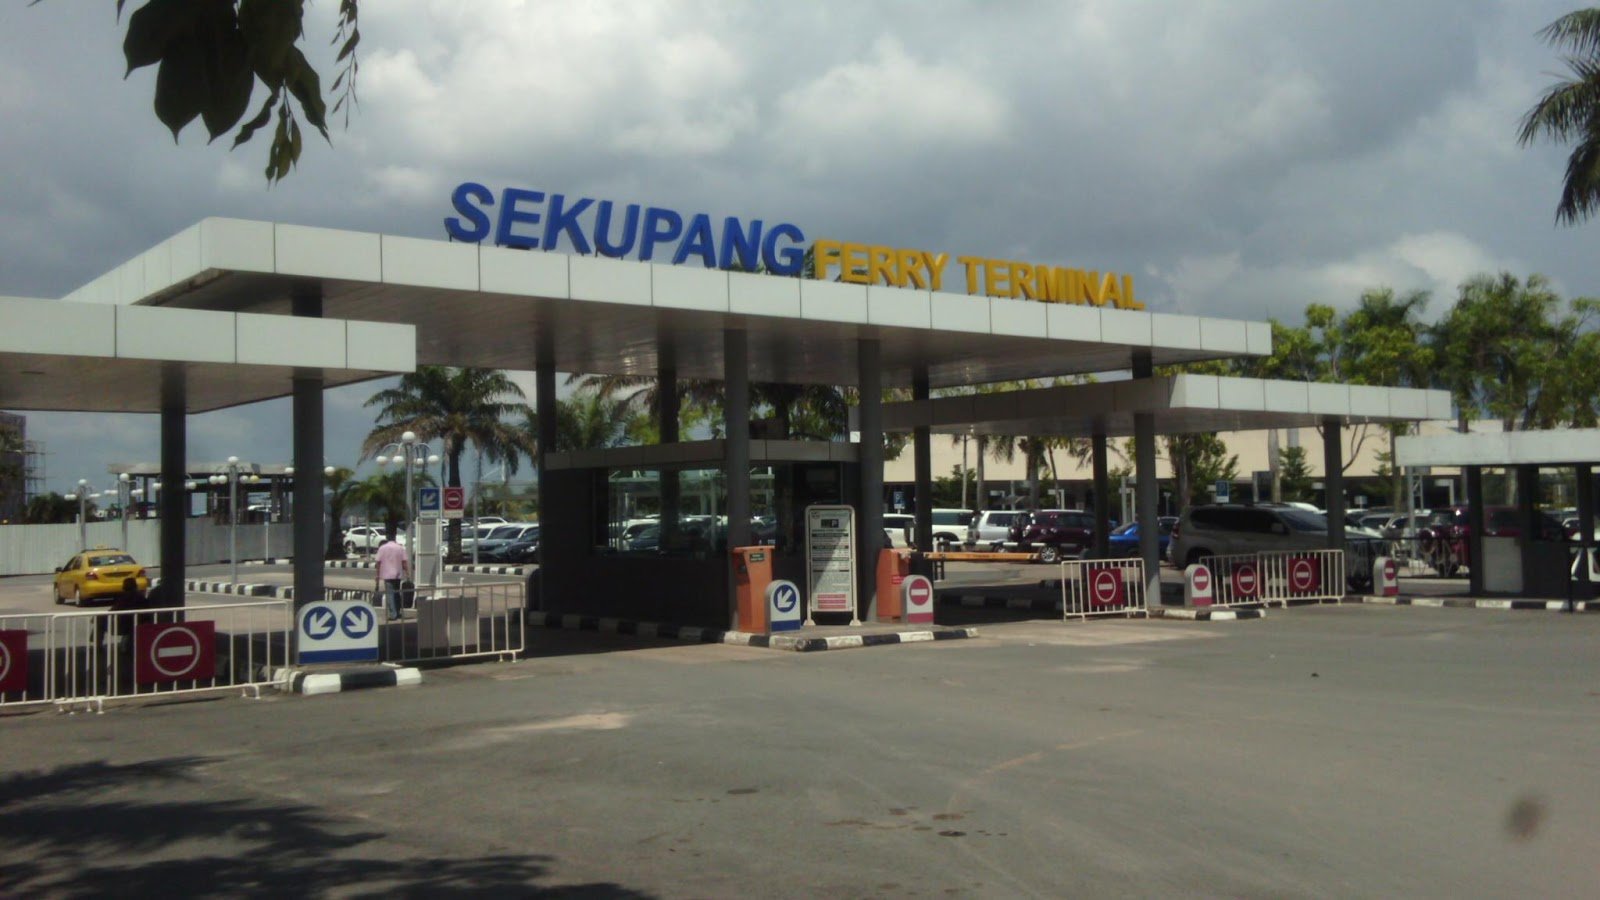 Terminal Ferry Sekupang Batam